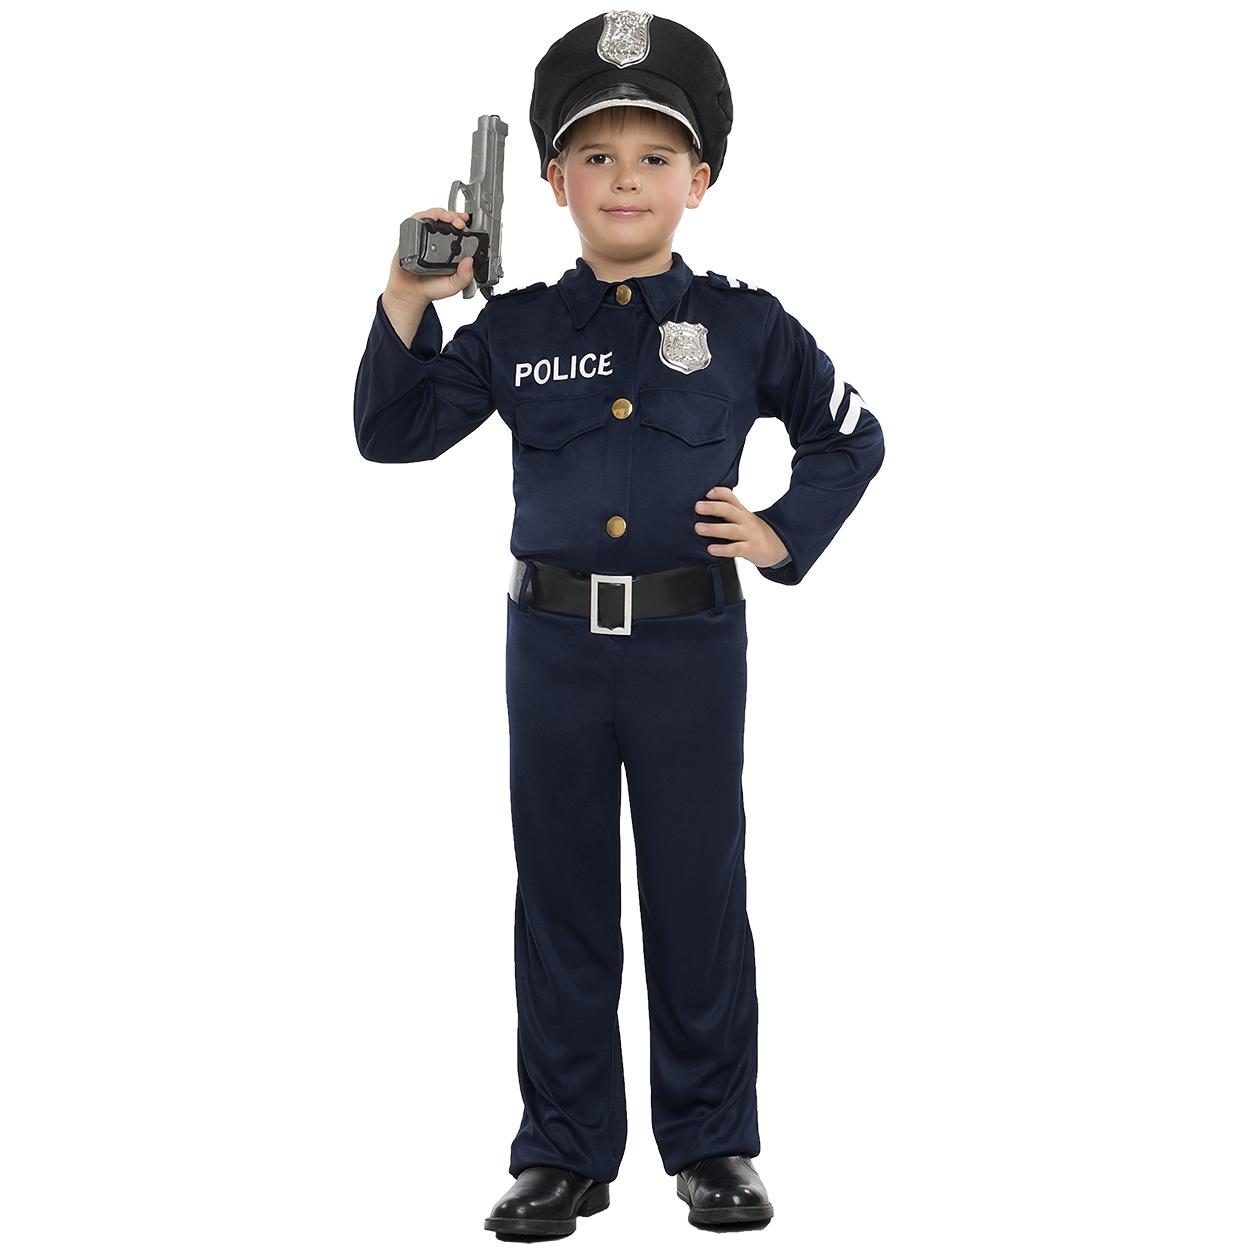 Disfraz de Policia infantil